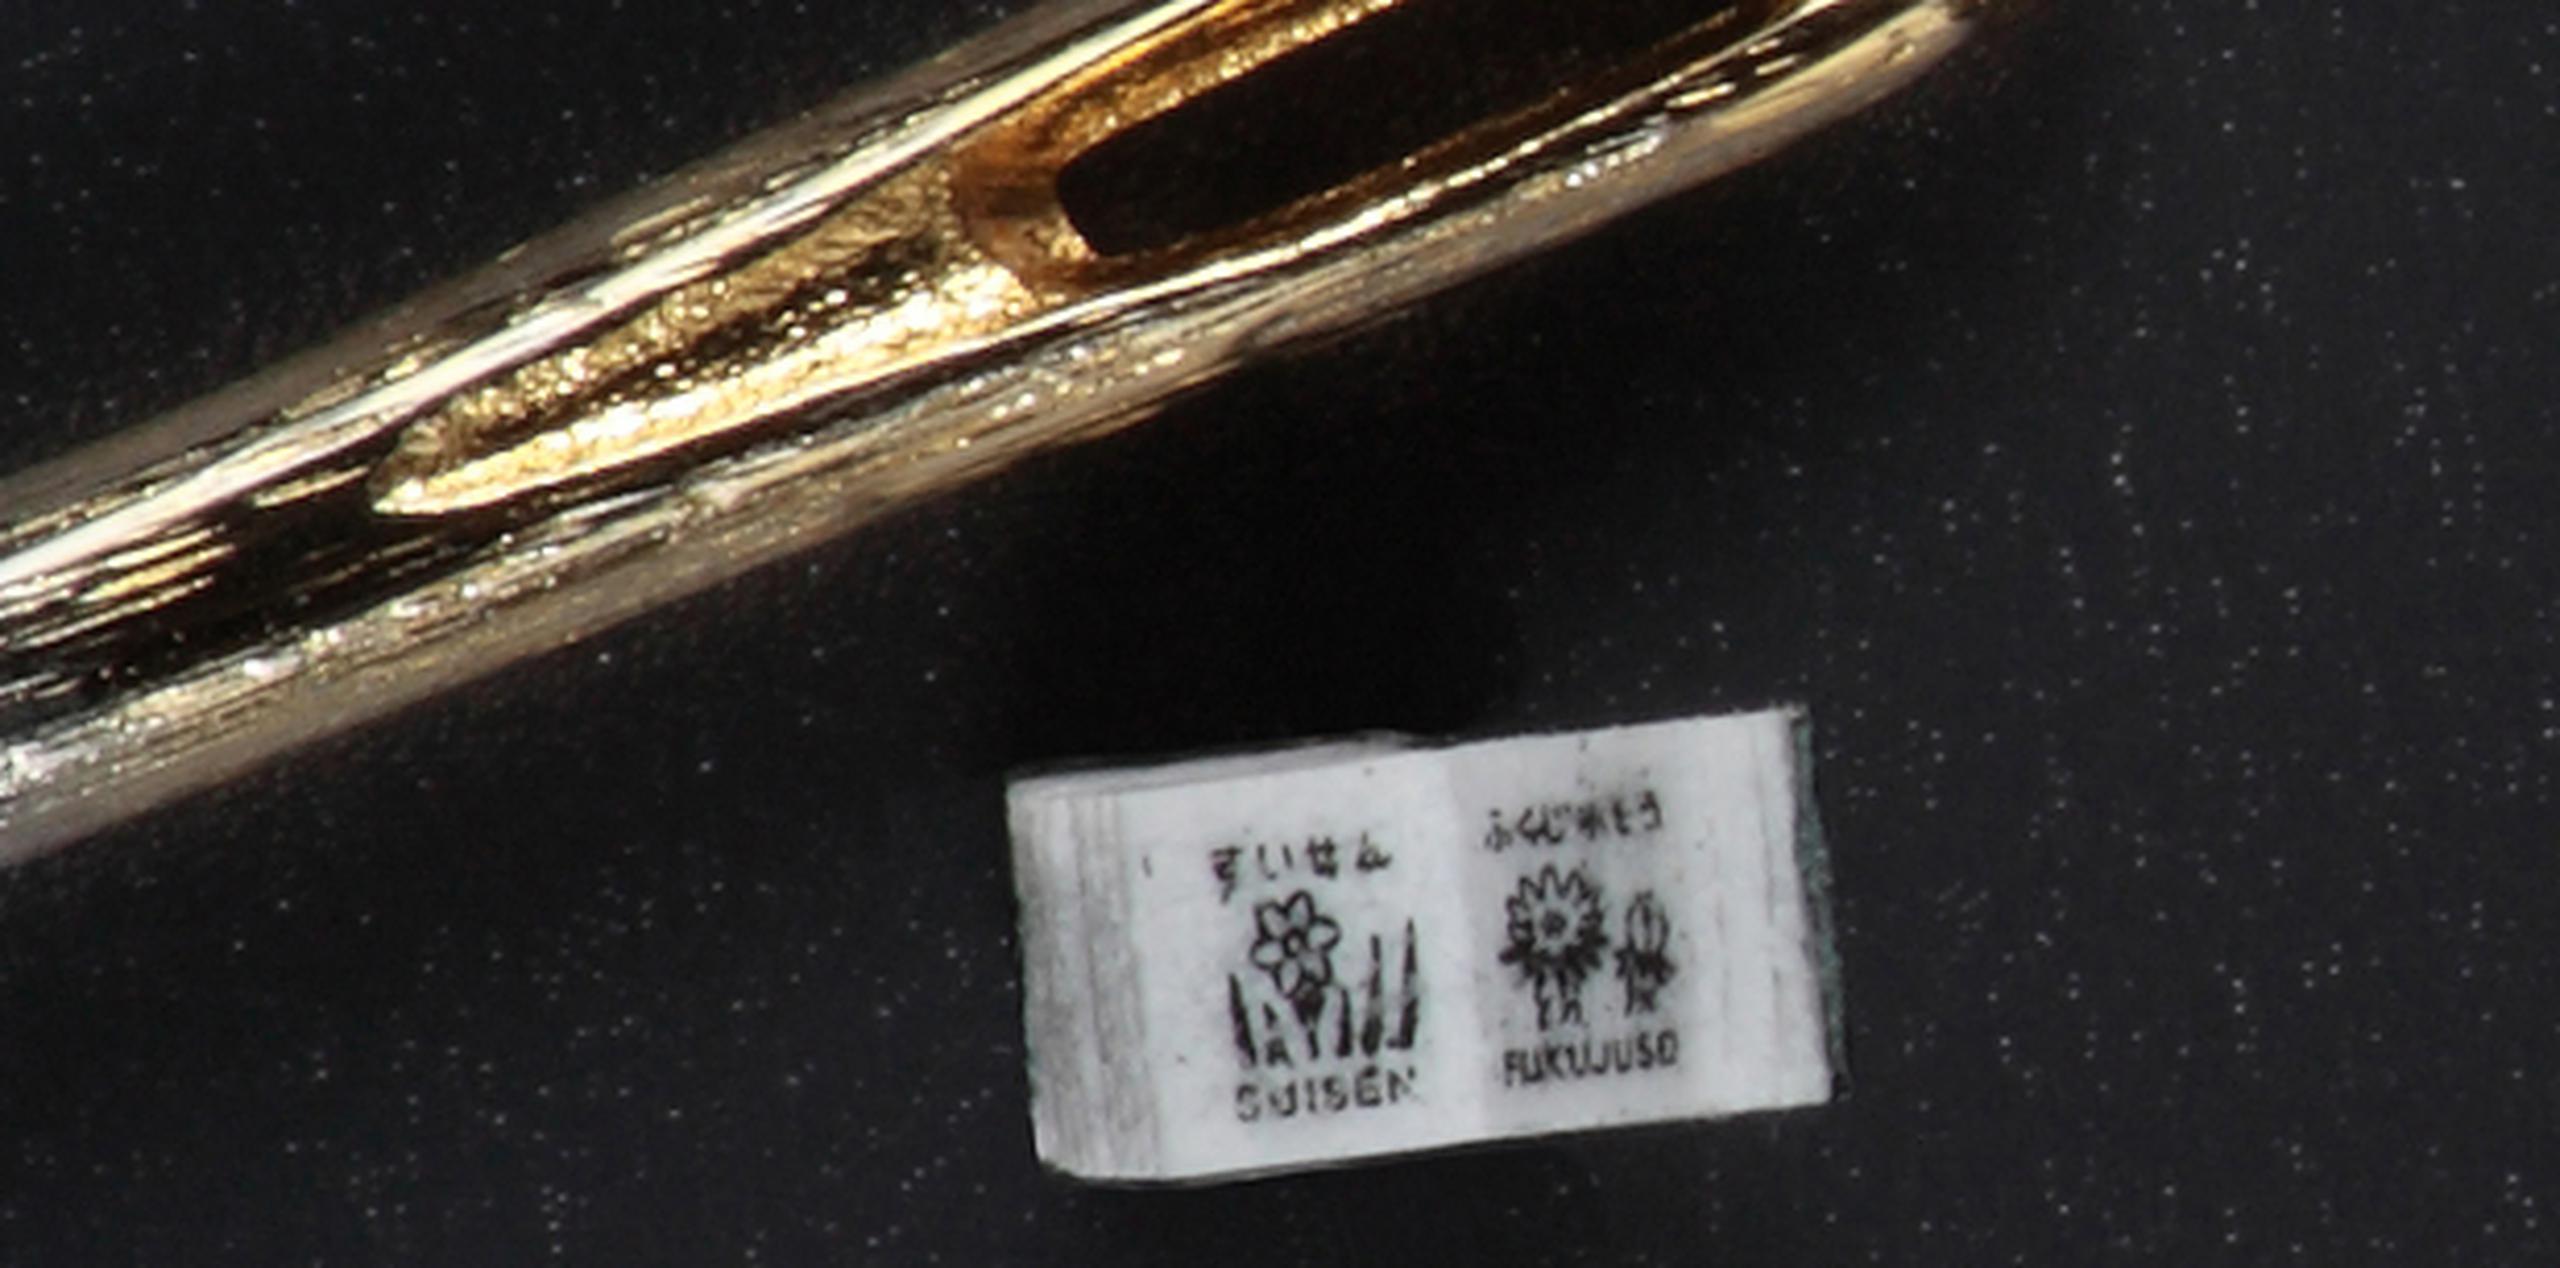 El diminuto libro es mostrado al lado de una aguja de coser. (AFP/Toppan Printing)